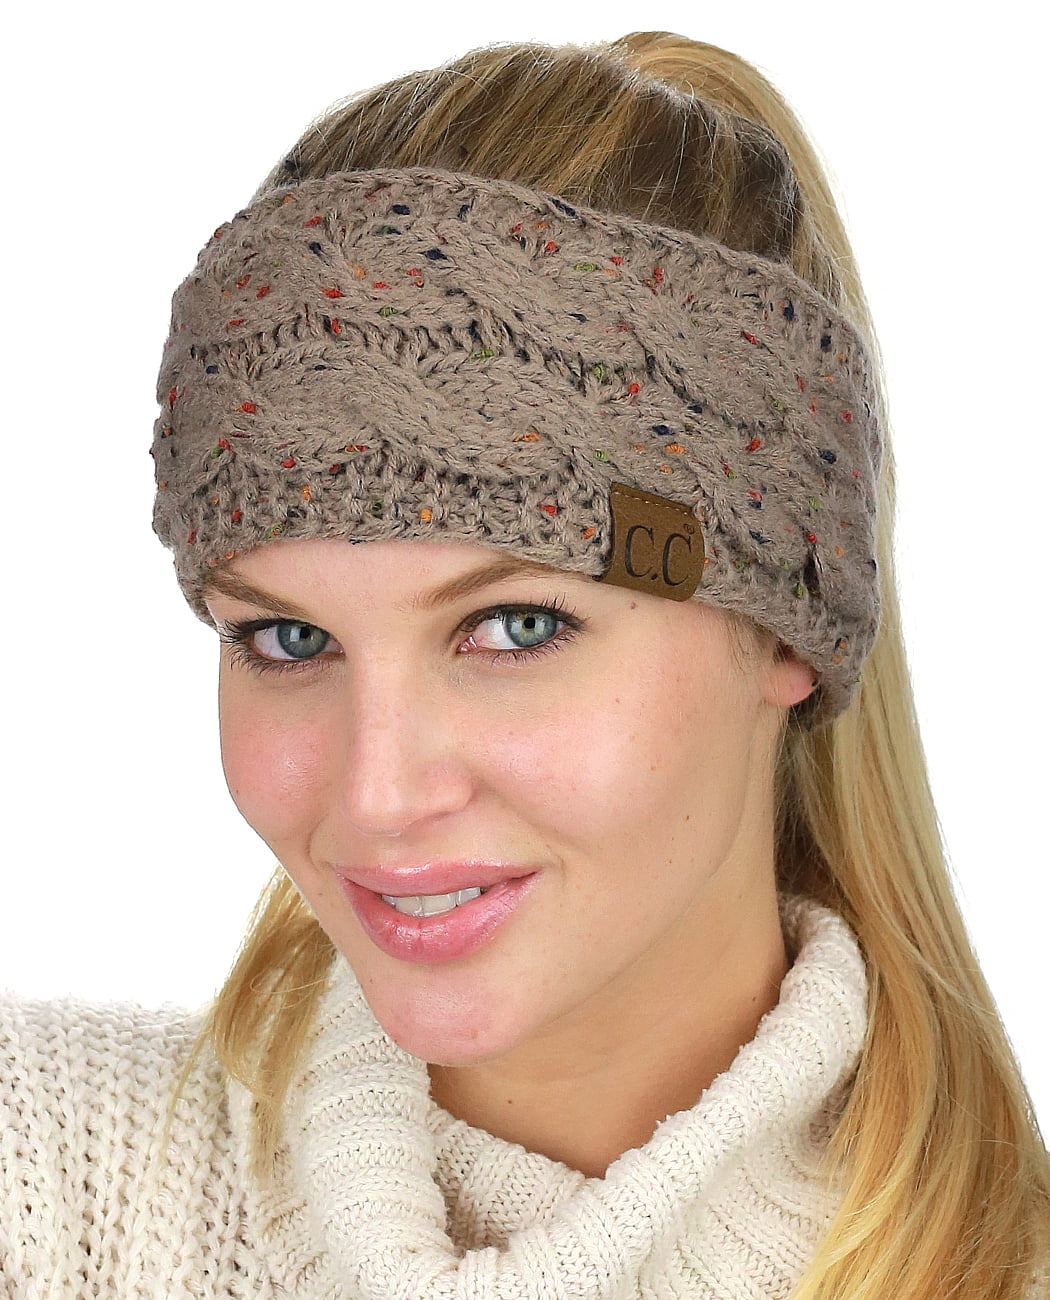 Shegirl Womens Cable Ear Warmers Headbands Winter Warm Head Wrap Fuzzy Lined Thick Knit Headwrap Gifts Dark Blue